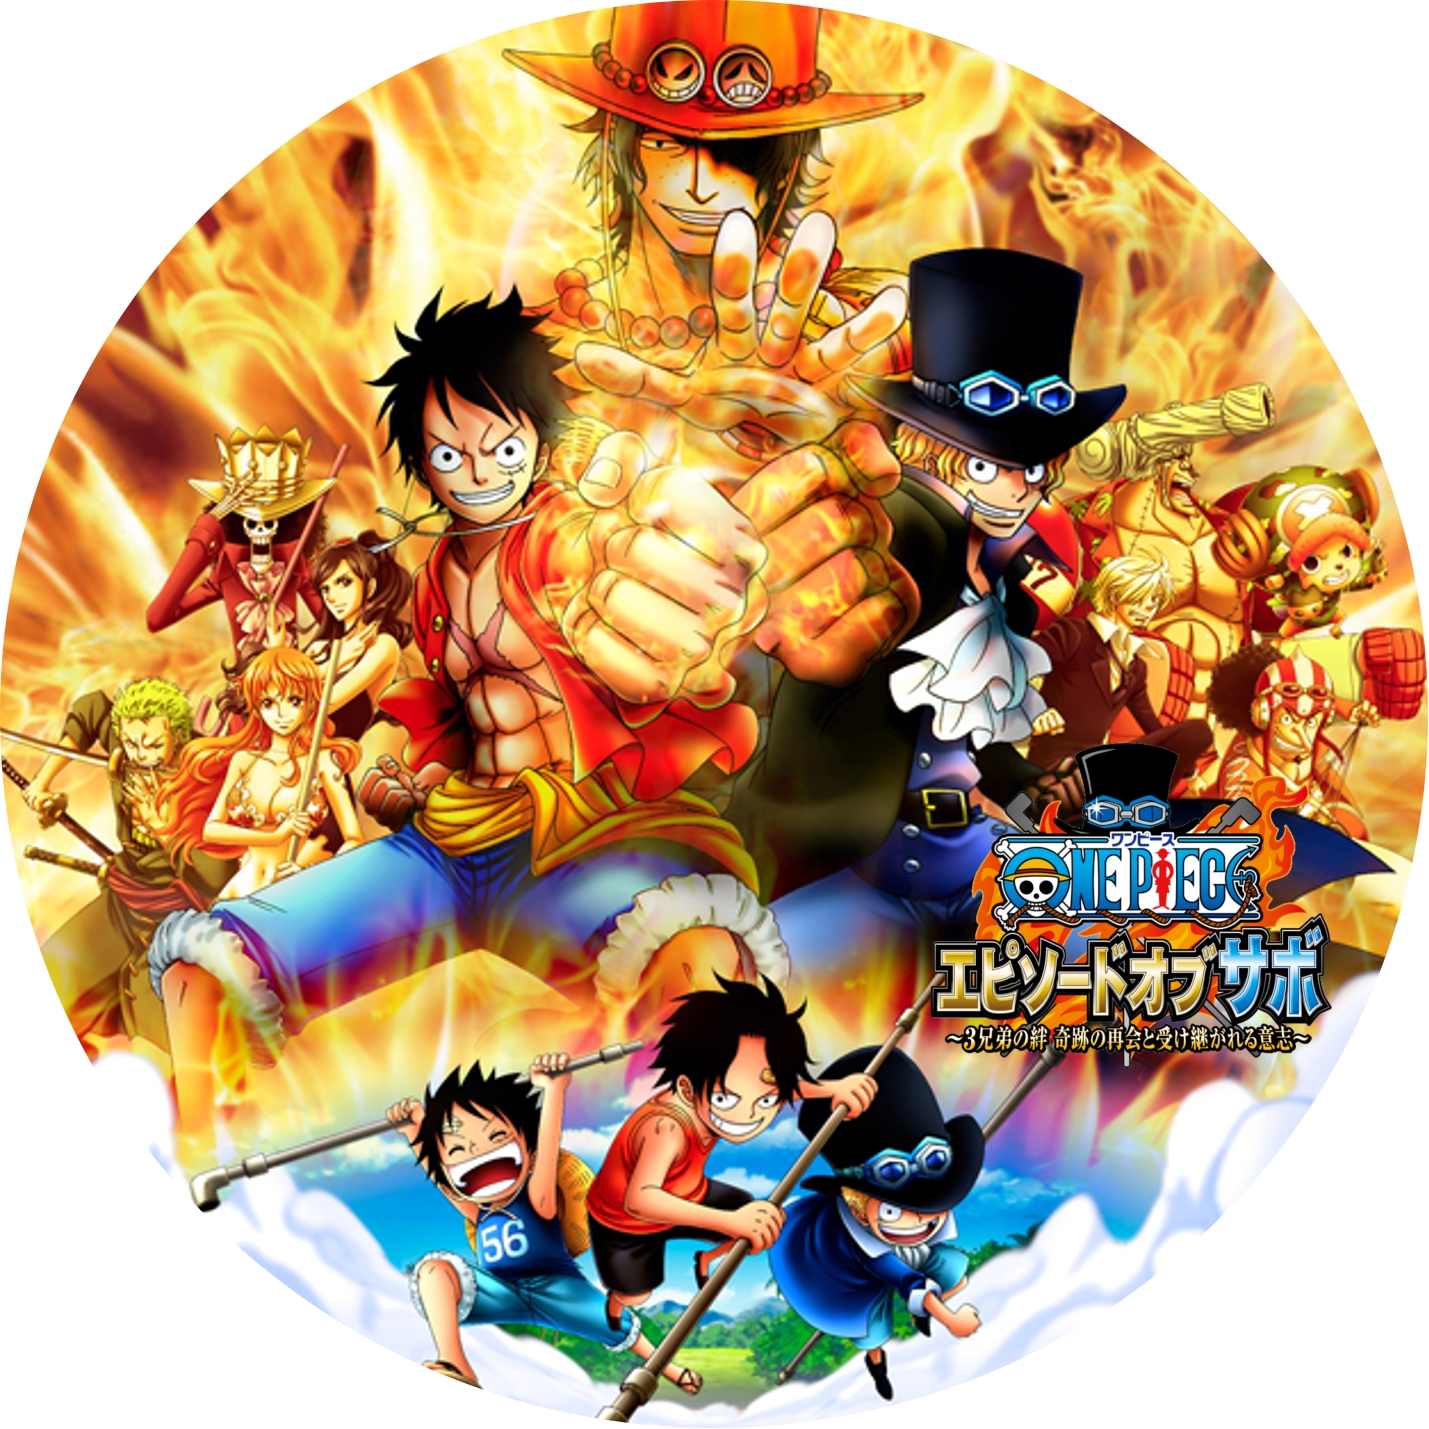 ワンピース One Piece Tvスペシャル3作品 汎用のdvdラベルです Meechanmama みーちゃんママ の部屋